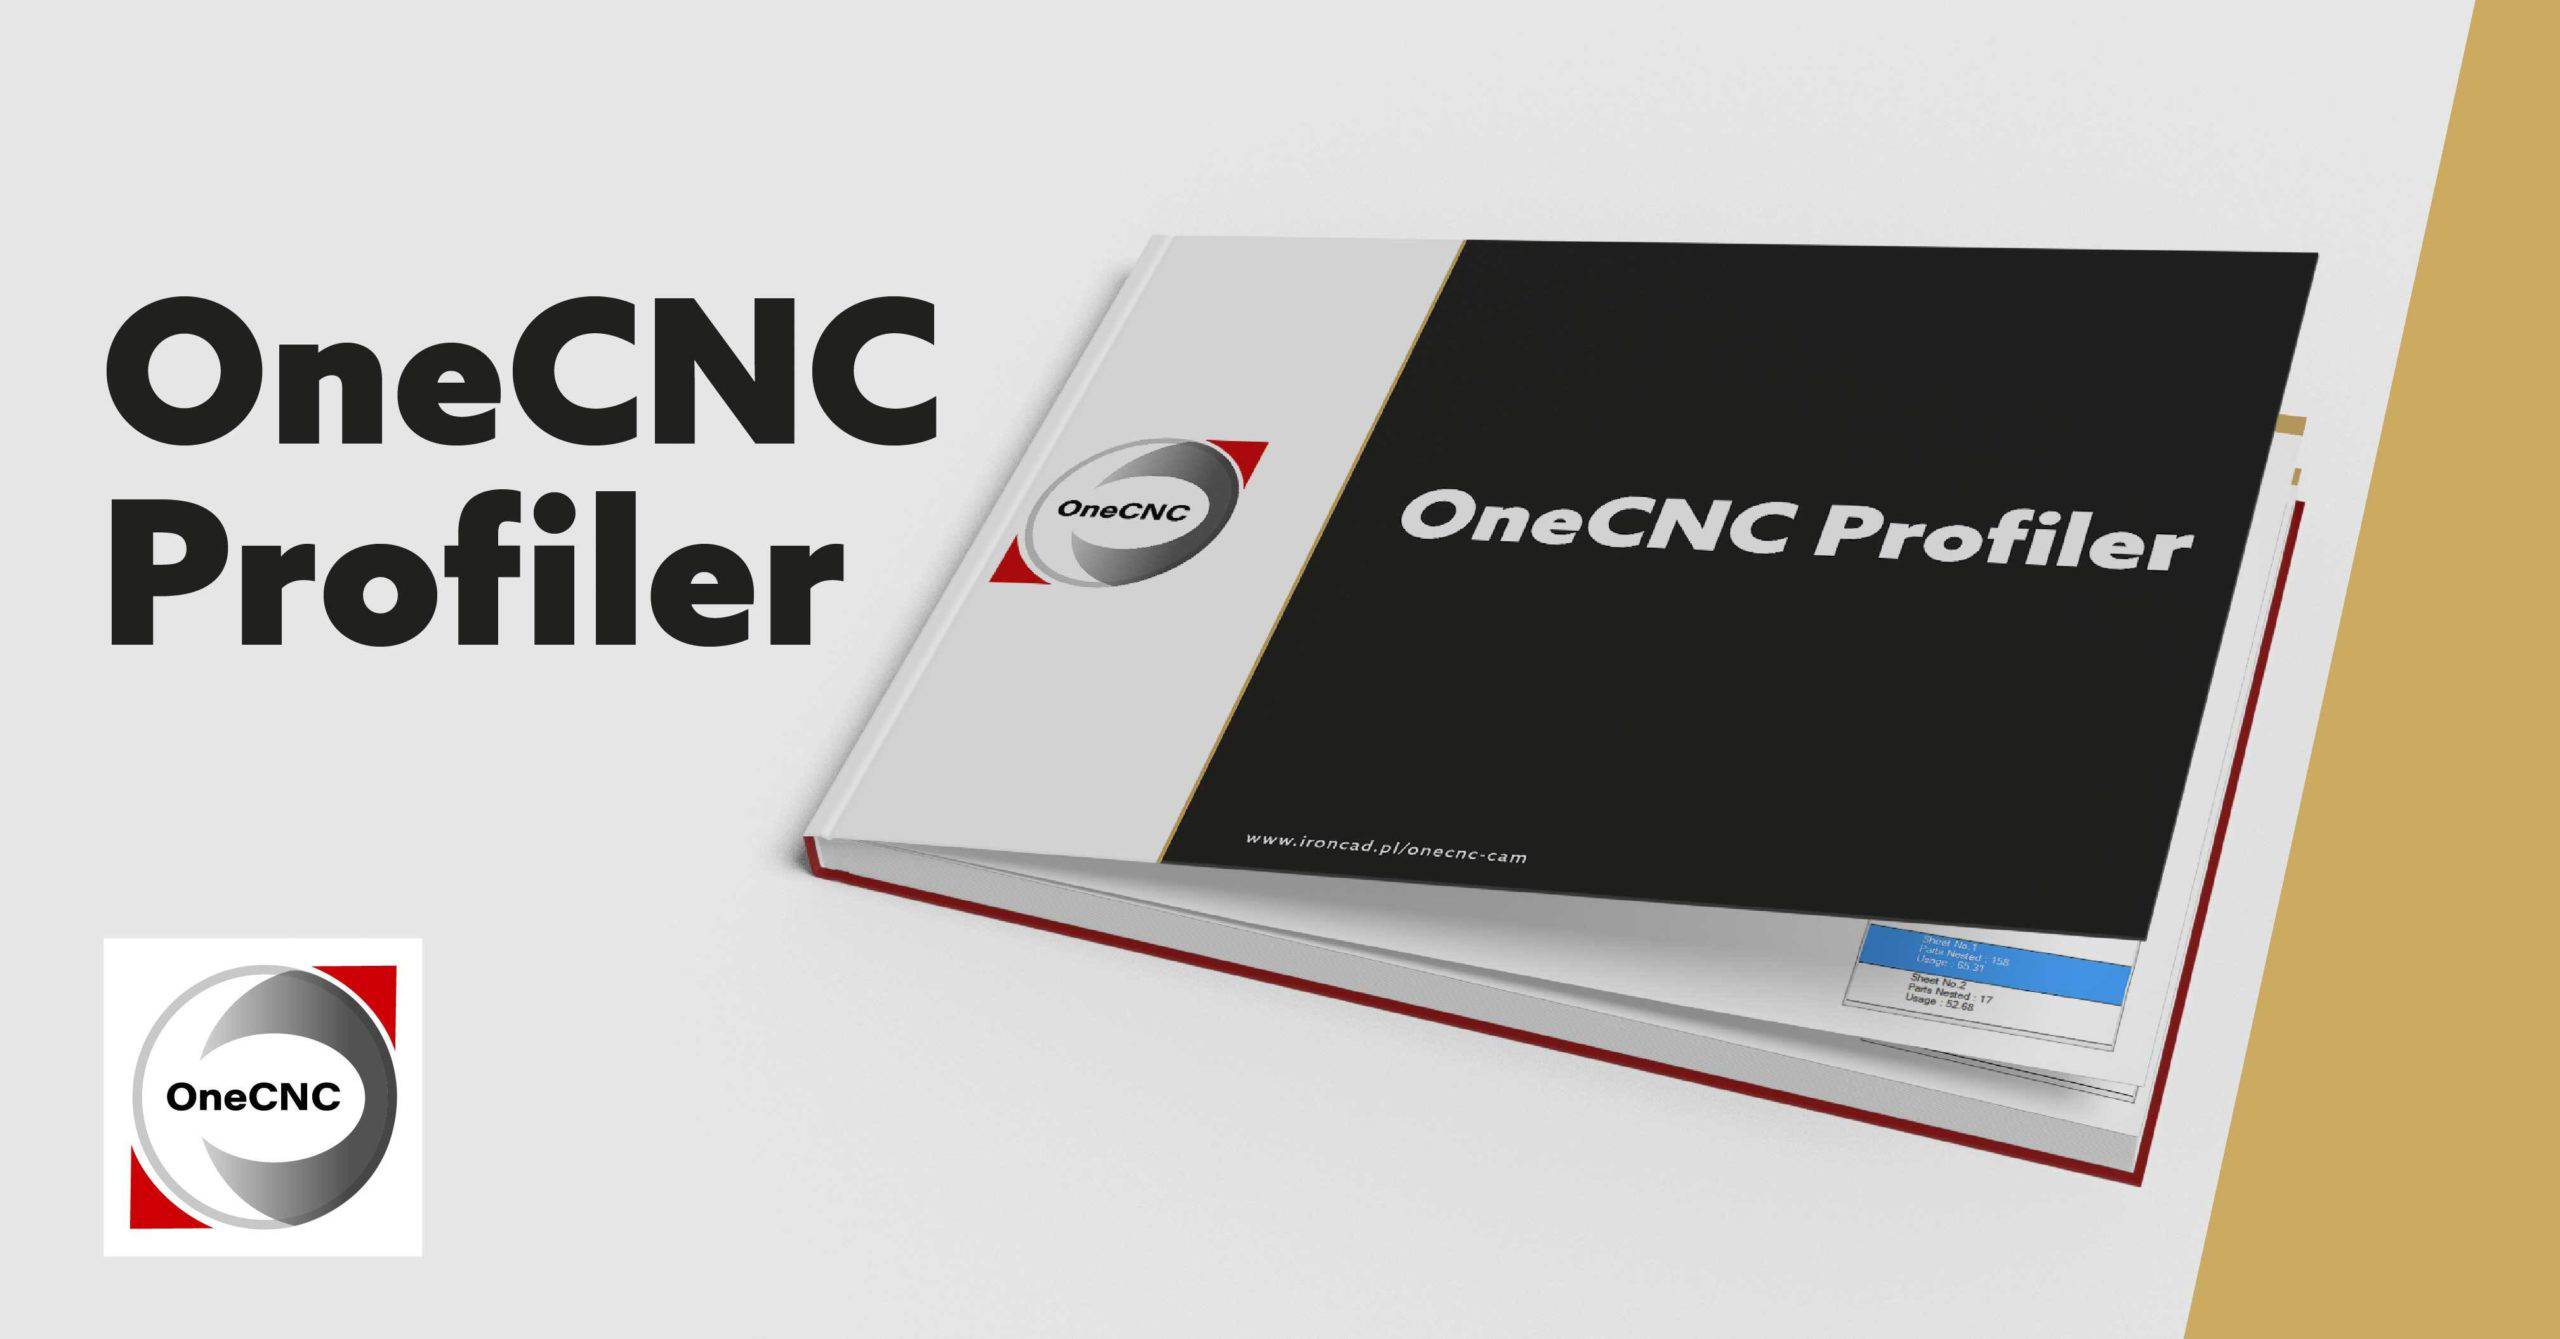 Vedeți de ce este capabil OneCNC Profiler!